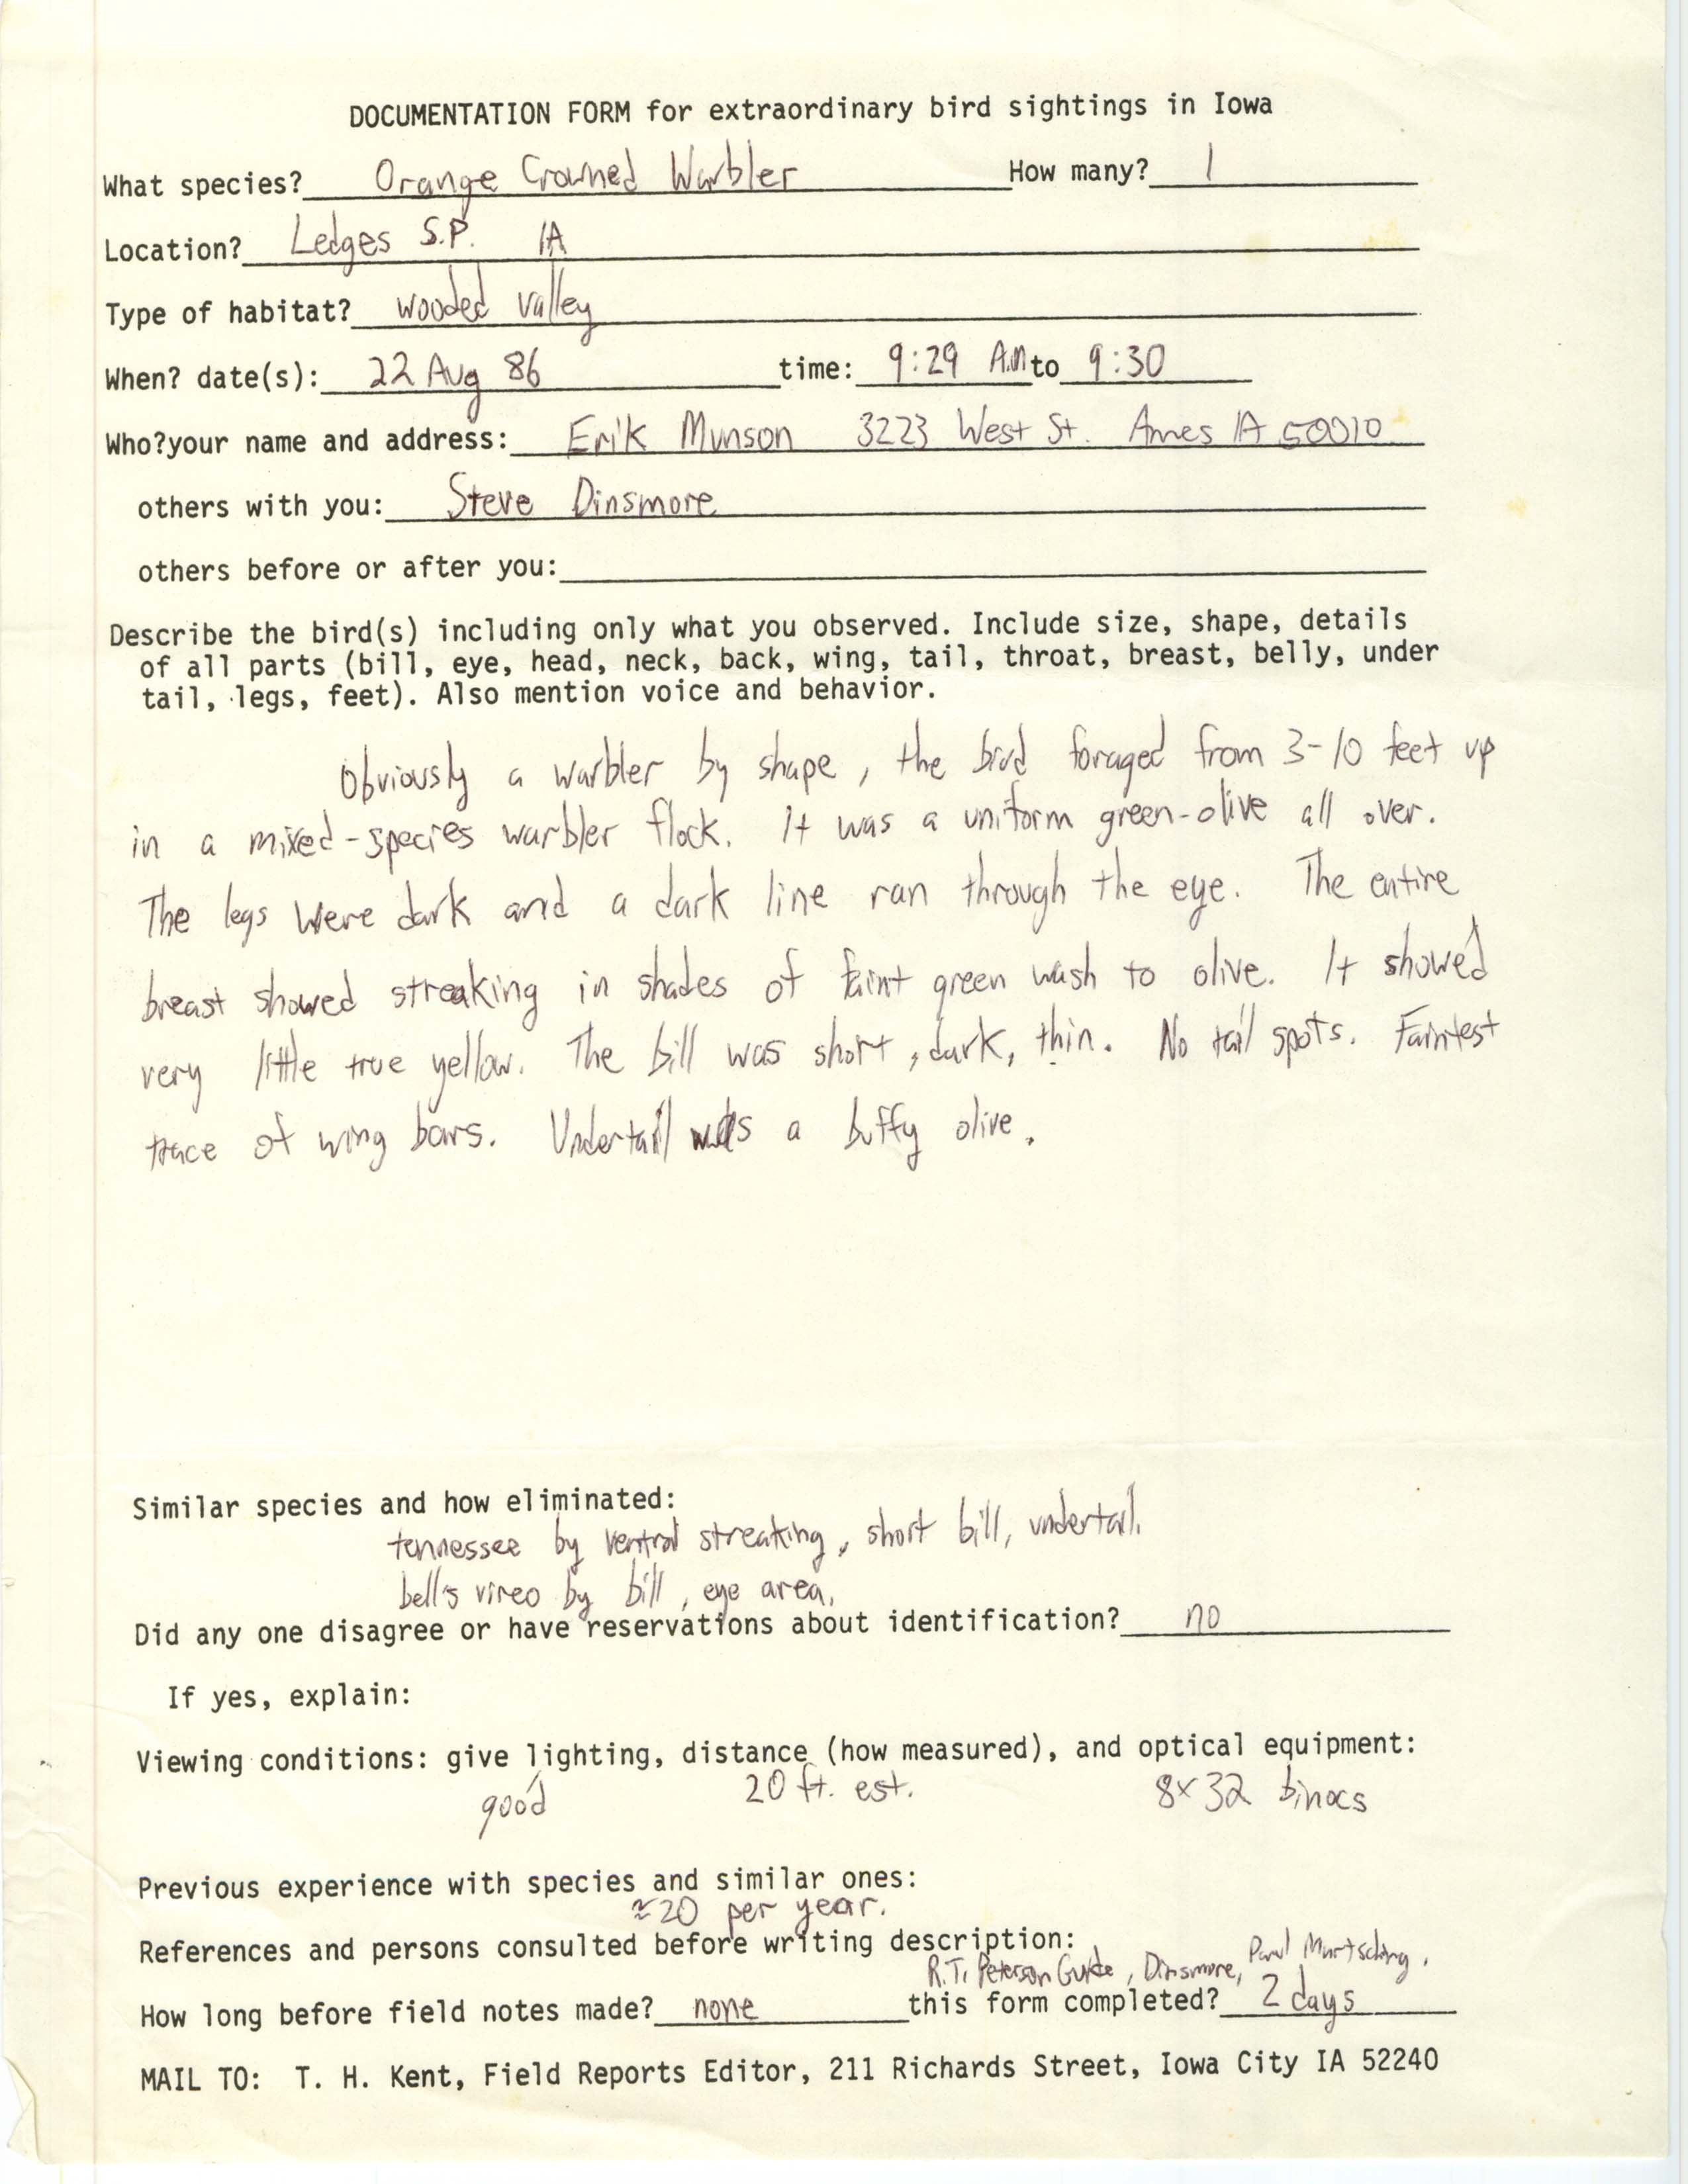 Rare bird documentation form for Orange-crowned Warbler at Ledges State Park in 1986